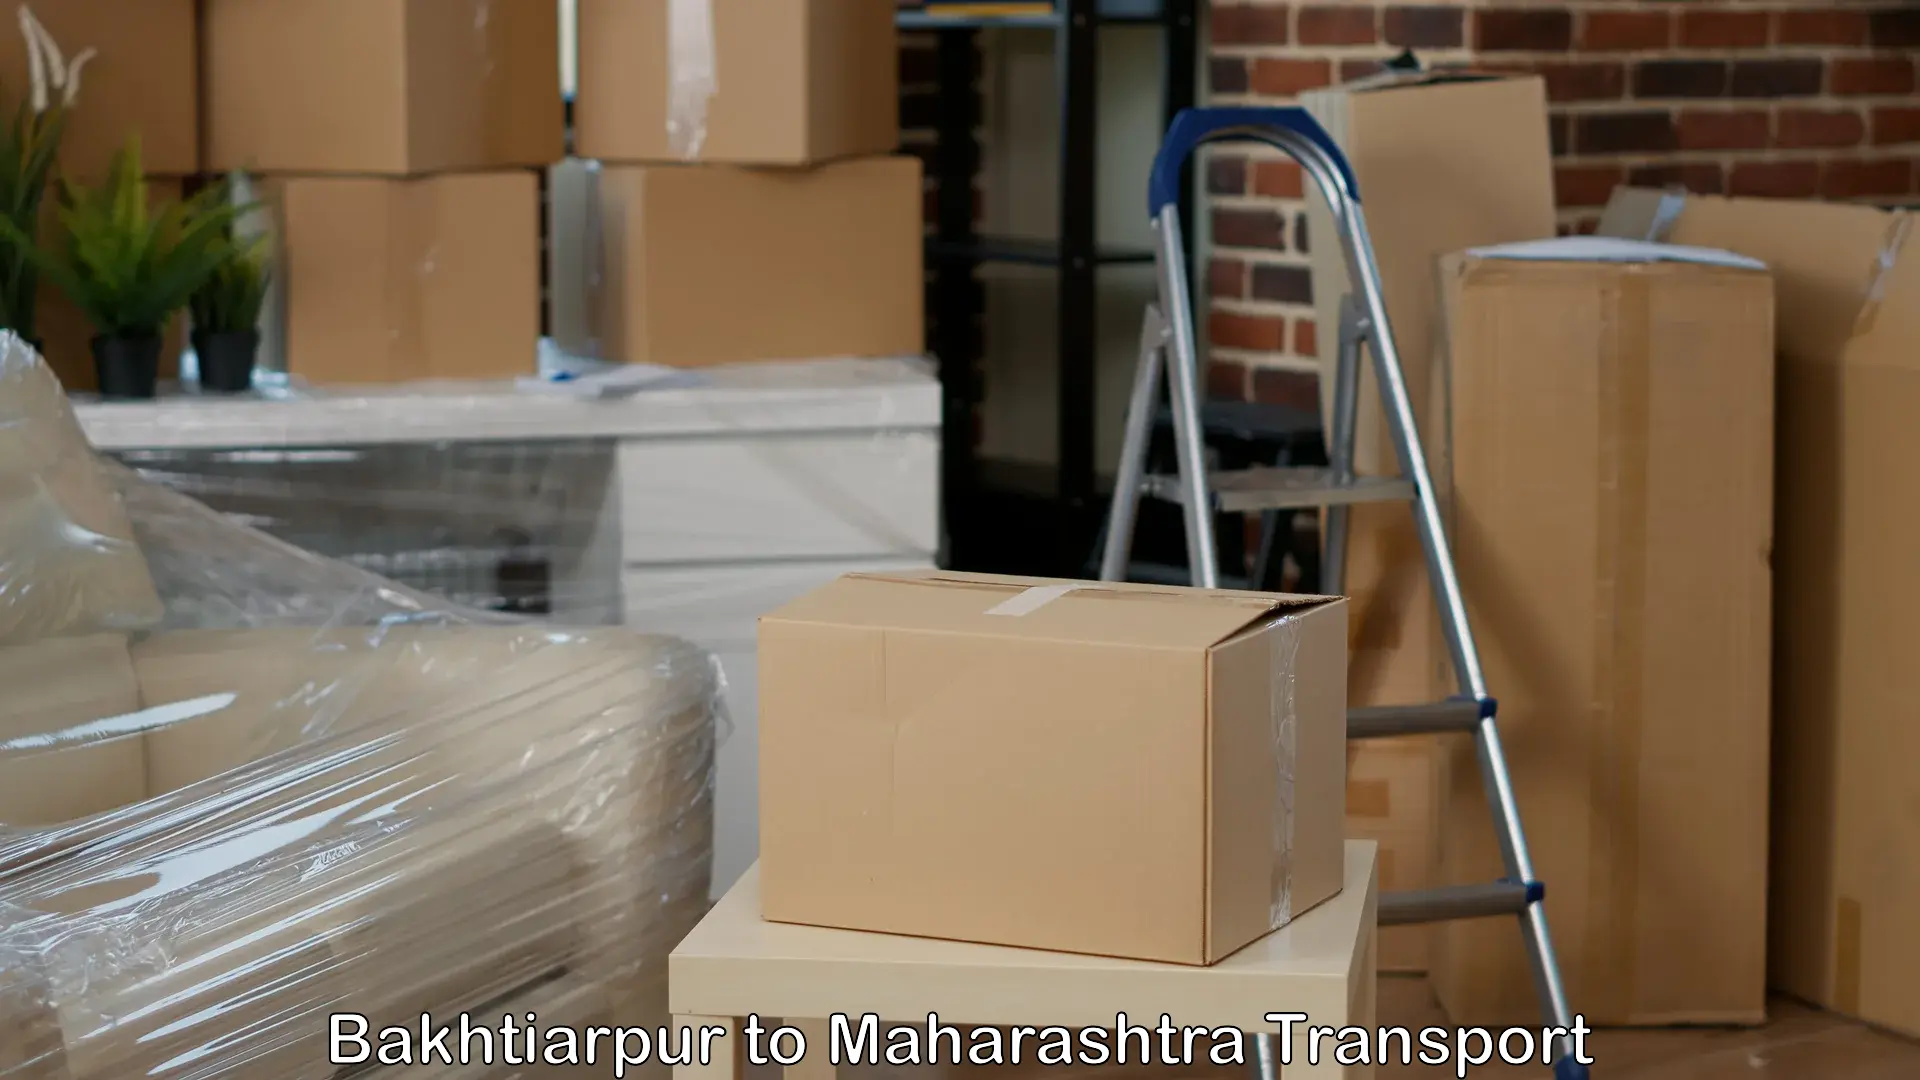 Shipping partner Bakhtiarpur to Raigarh Maharashtra